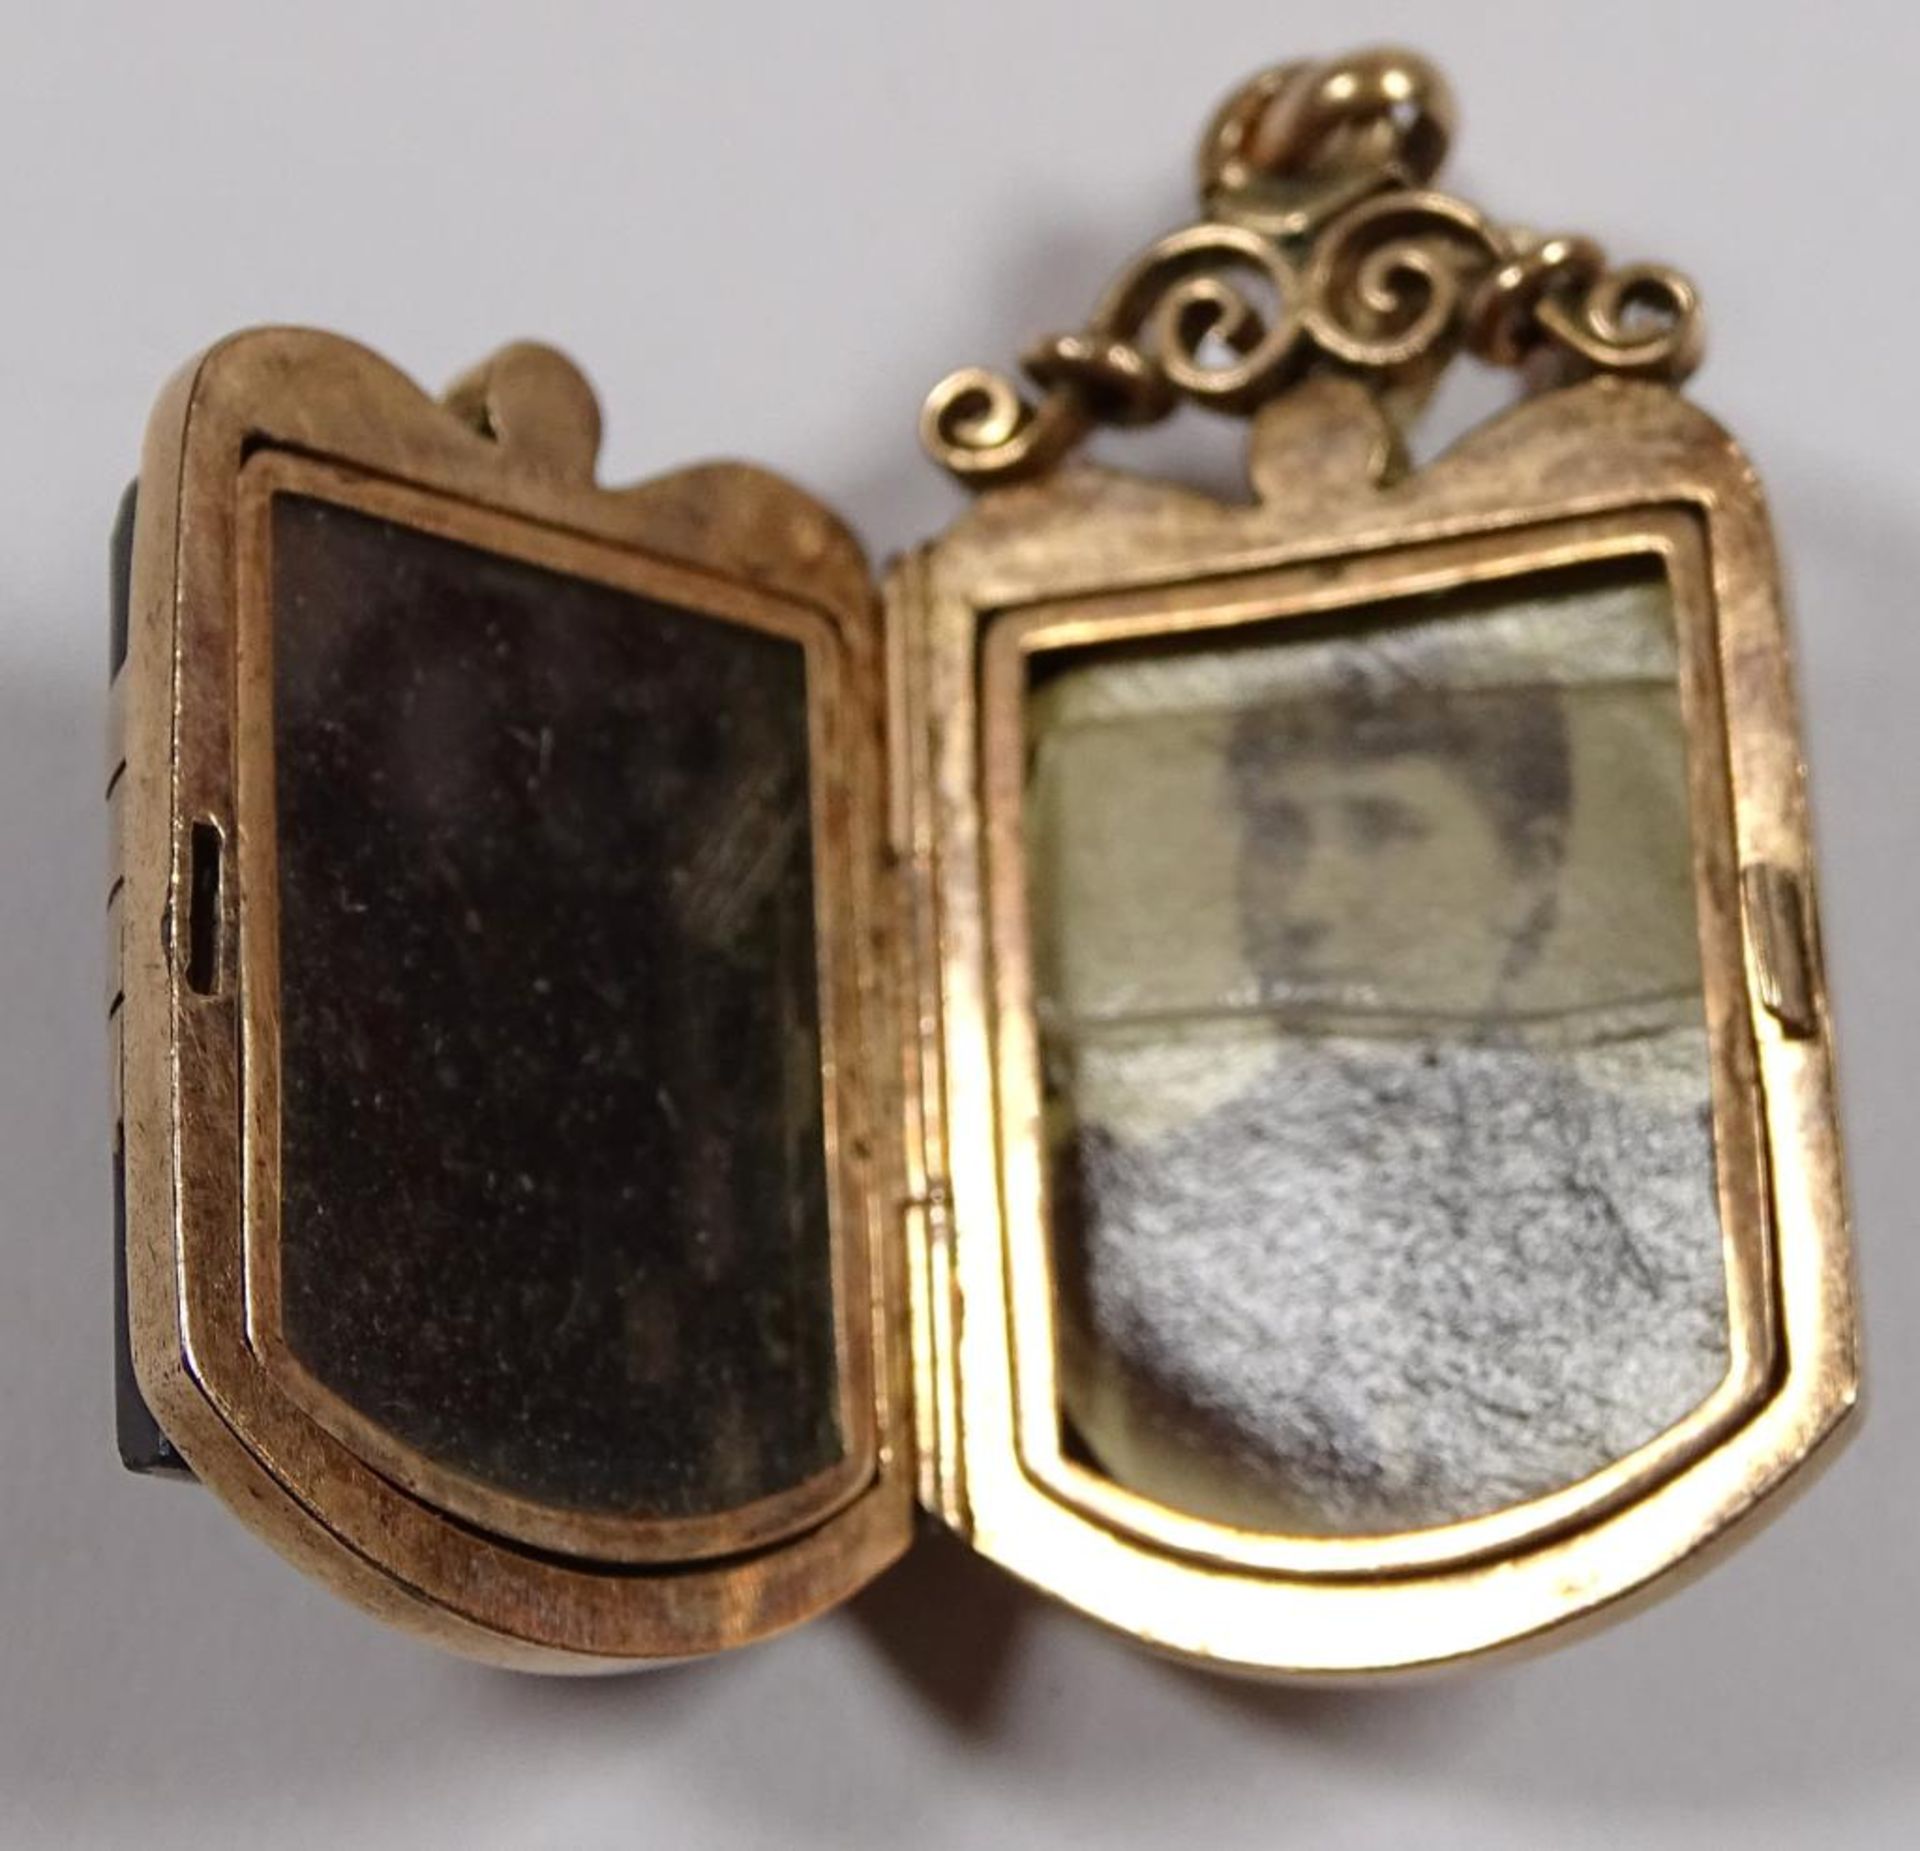 Anhänger,Gold um 14K,Fotomedaillon,Römerkopf auf schwarze Platte,ein Glas beschädigt,L- 4,5cm, 11,8 - Bild 3 aus 3